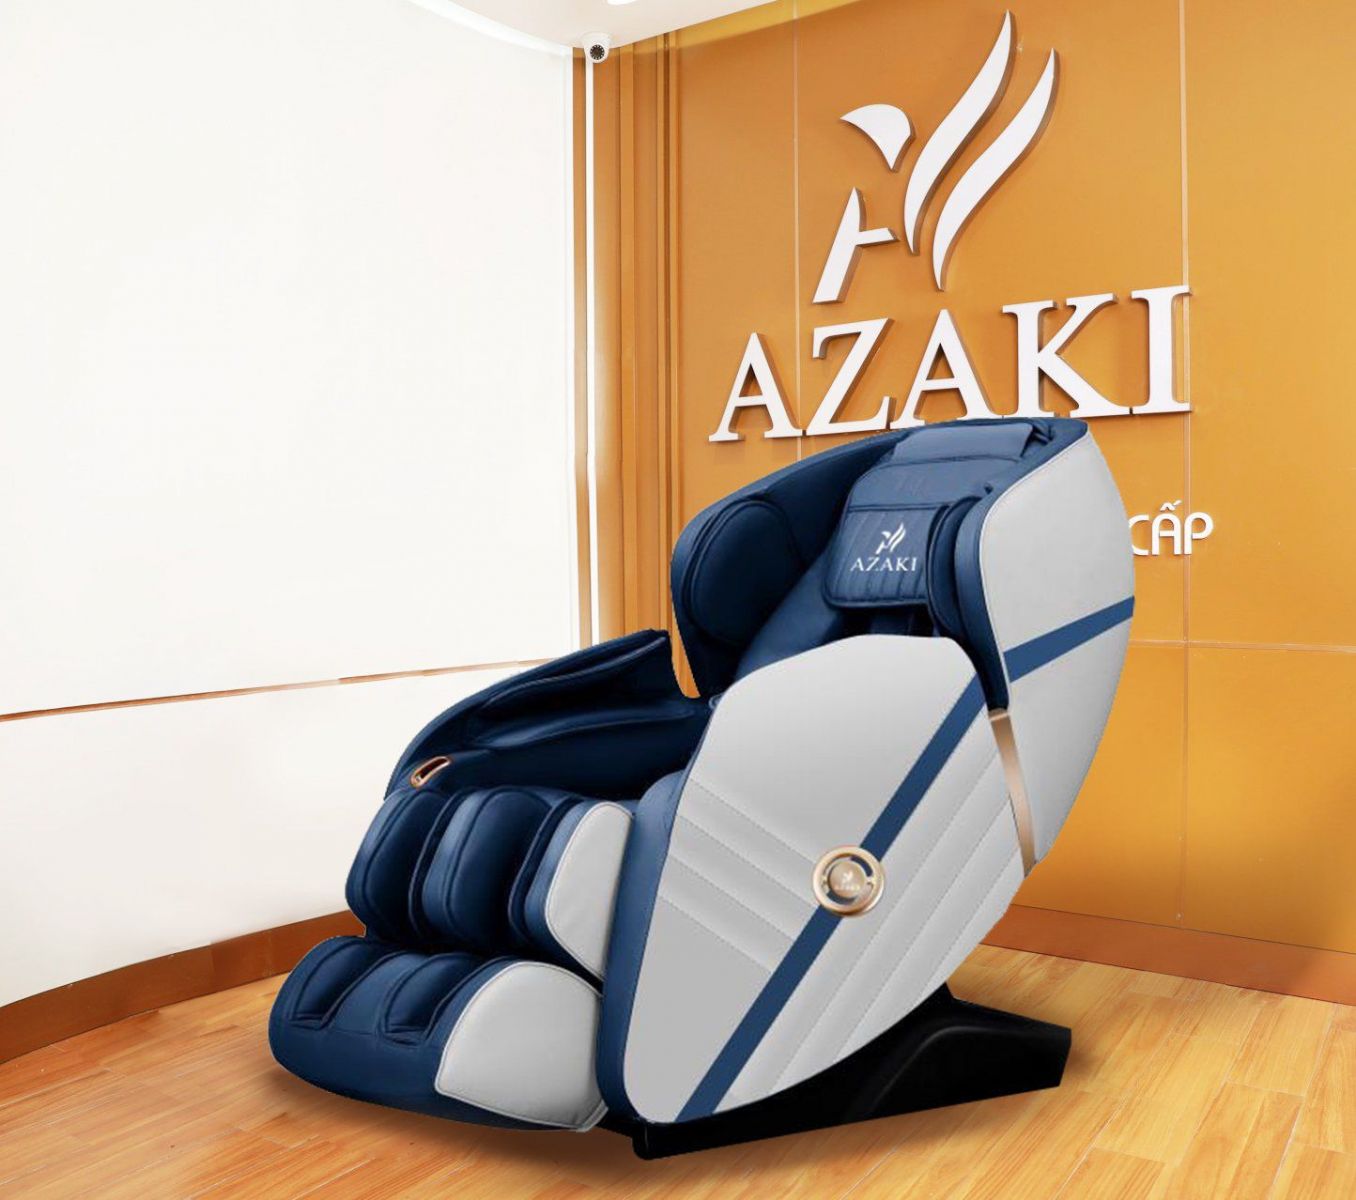  Công nghệ Zero Sliding Space và loa kết nối Bluetooth tích hợp trên ghế massgae Azaki